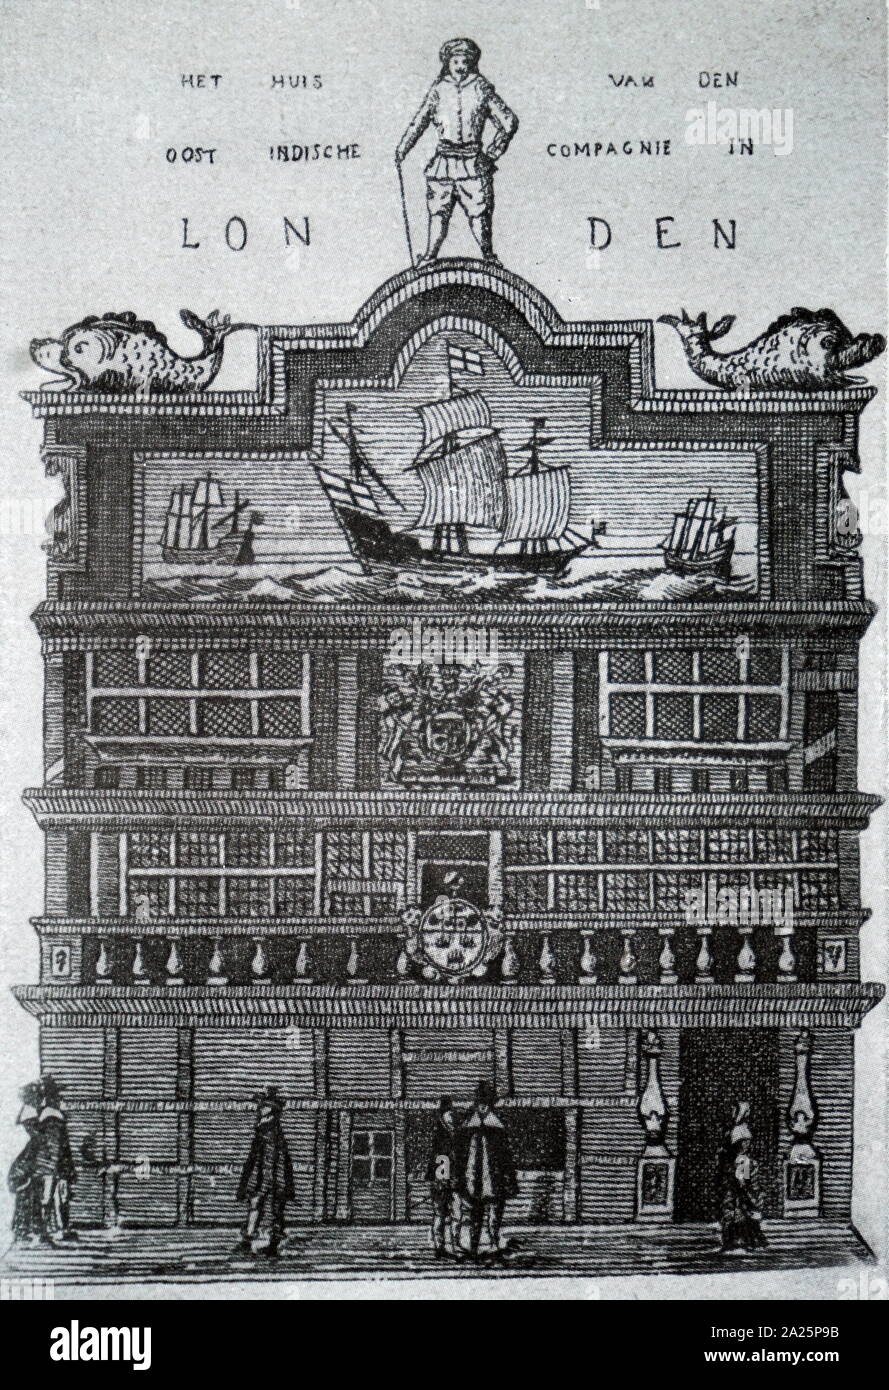 Holzschnitt Kupferstich mit der Darstellung der Muttergesellschaft der East India Company Stockfoto